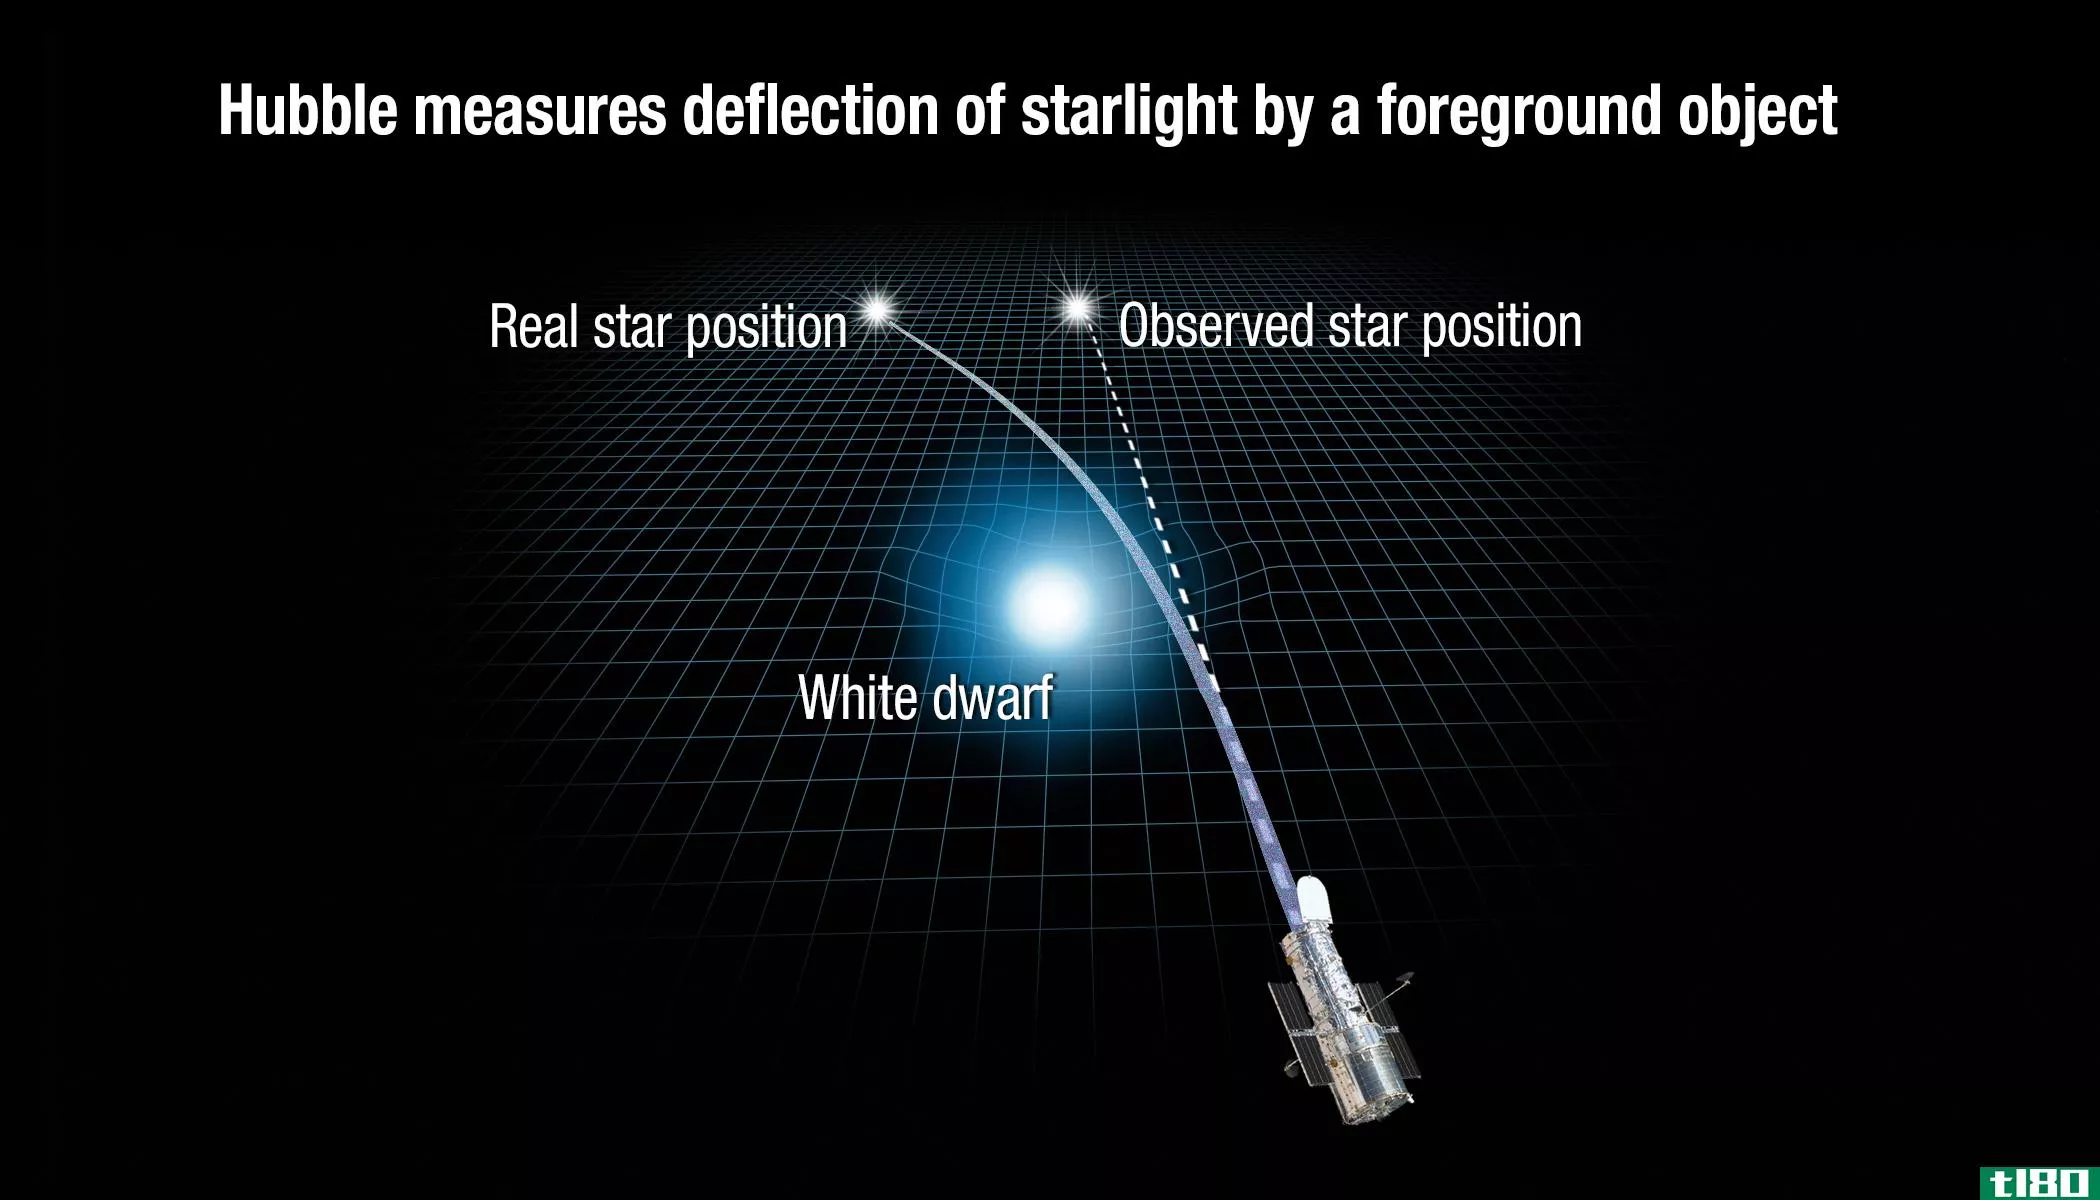 天文学家看到一颗恒星扭曲另一颗恒星的光线，而爱因斯坦认为这是我们从未见过的